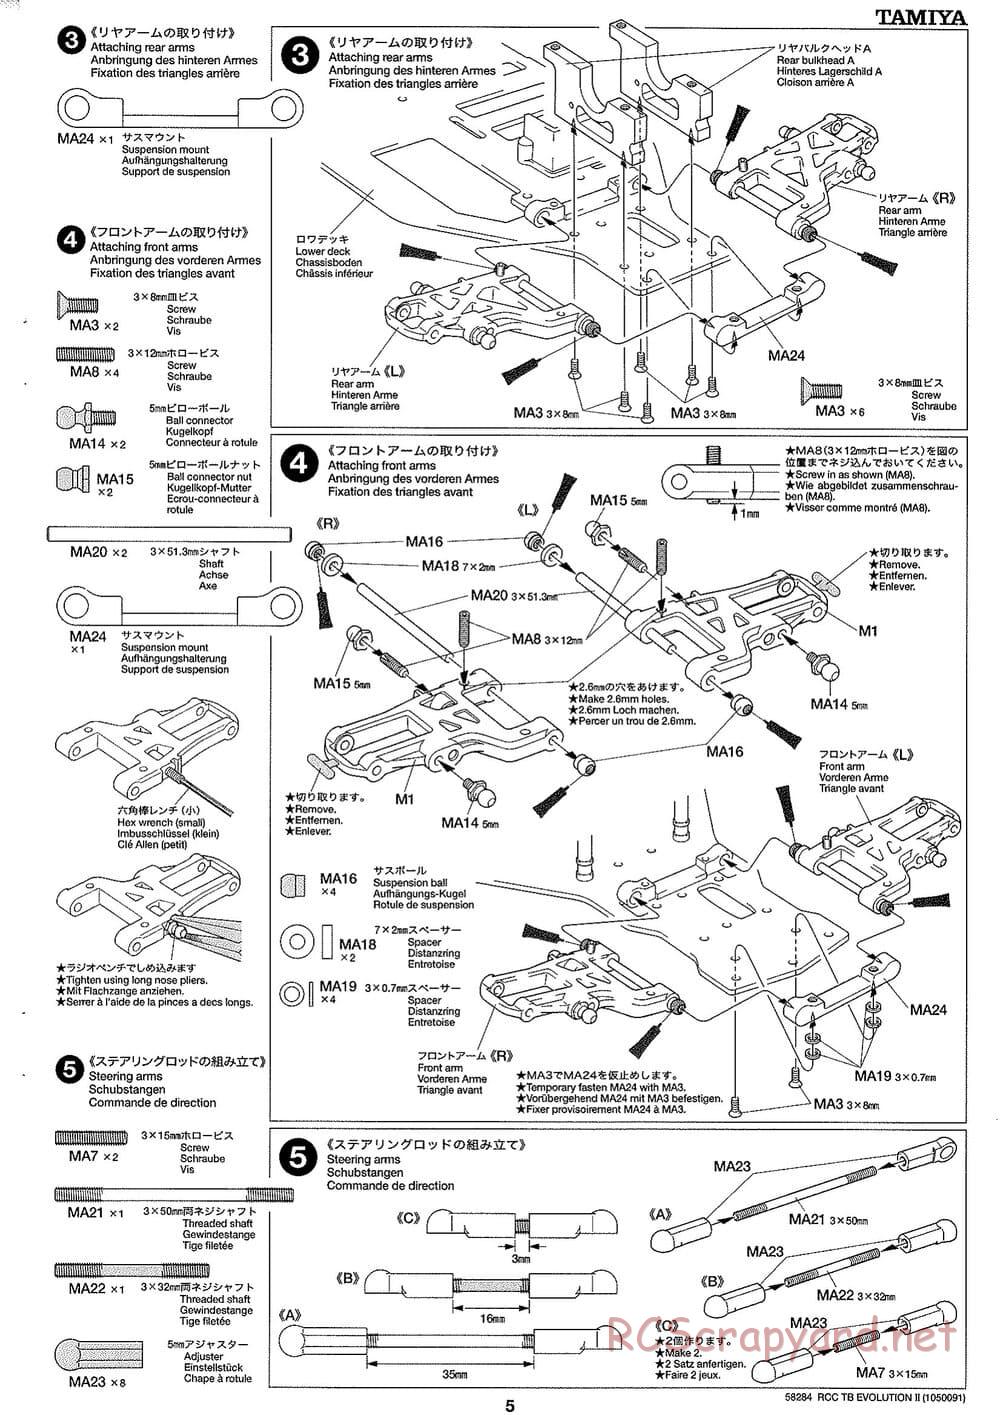 Tamiya - TB Evolution II Chassis - Manual - Page 5